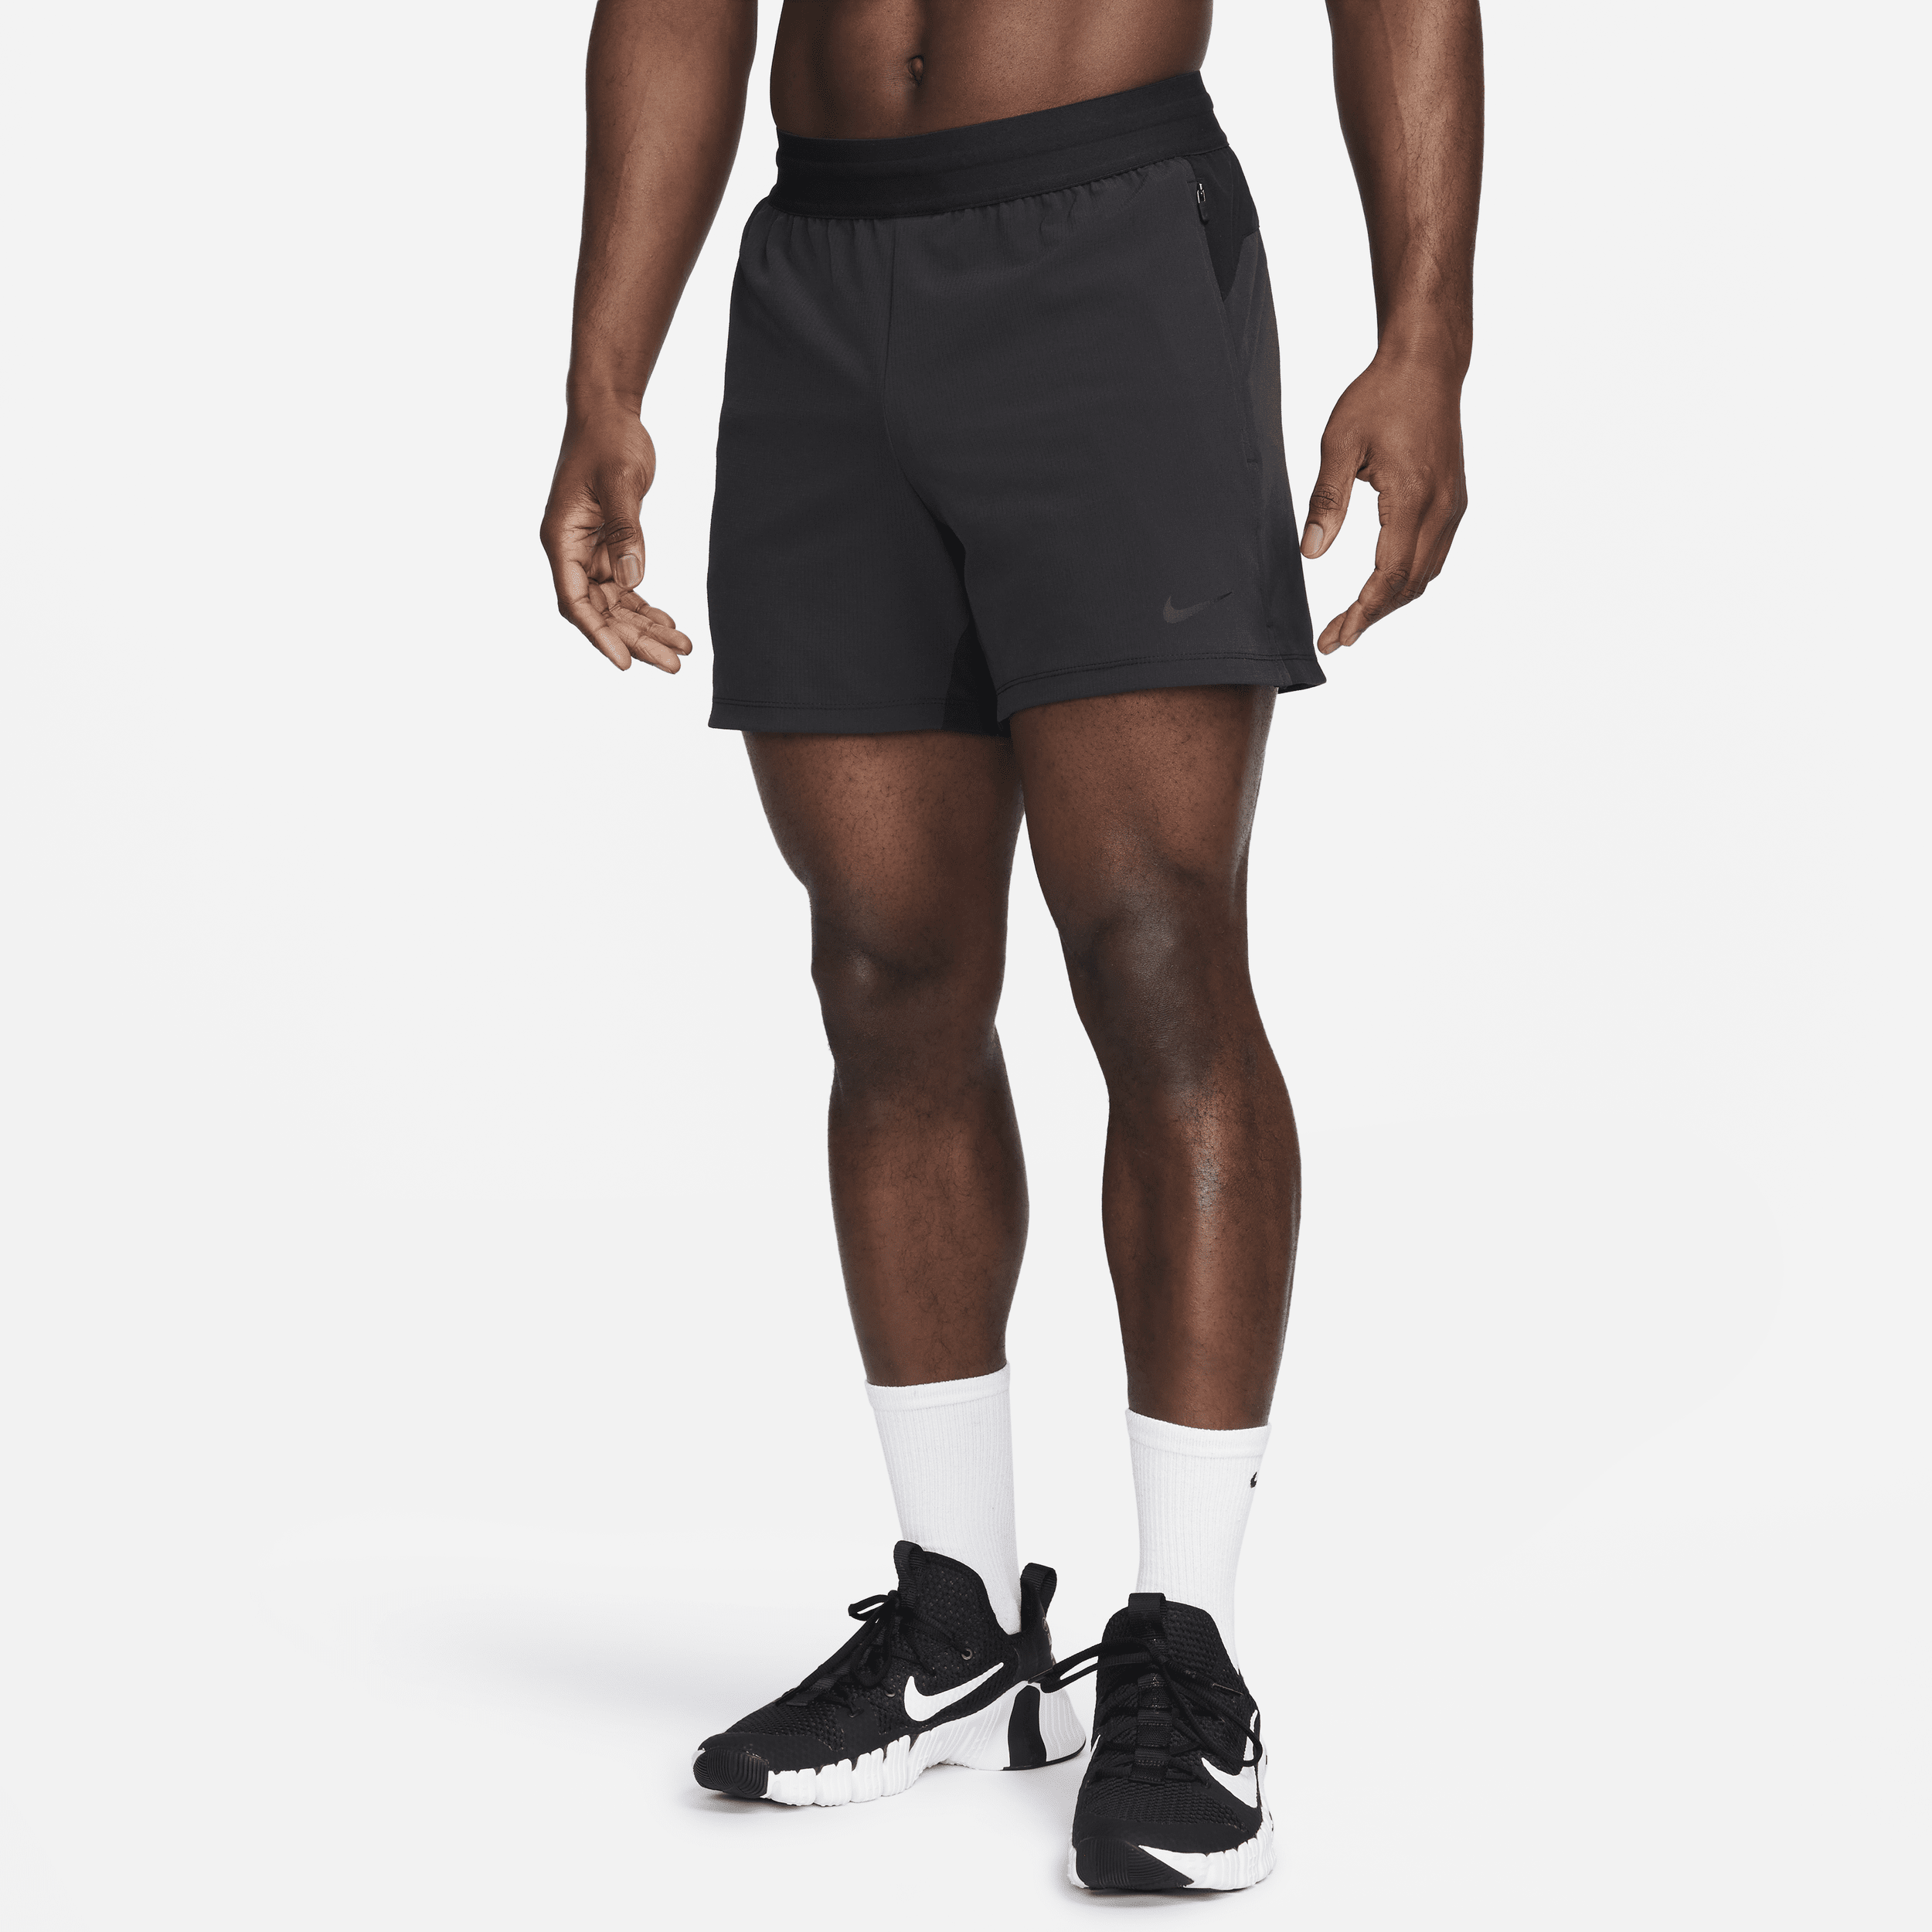 Nike Flex Rep Pantalón corto deportivo Dri-FIT de 13 cm sin forro - Hombre - Negro